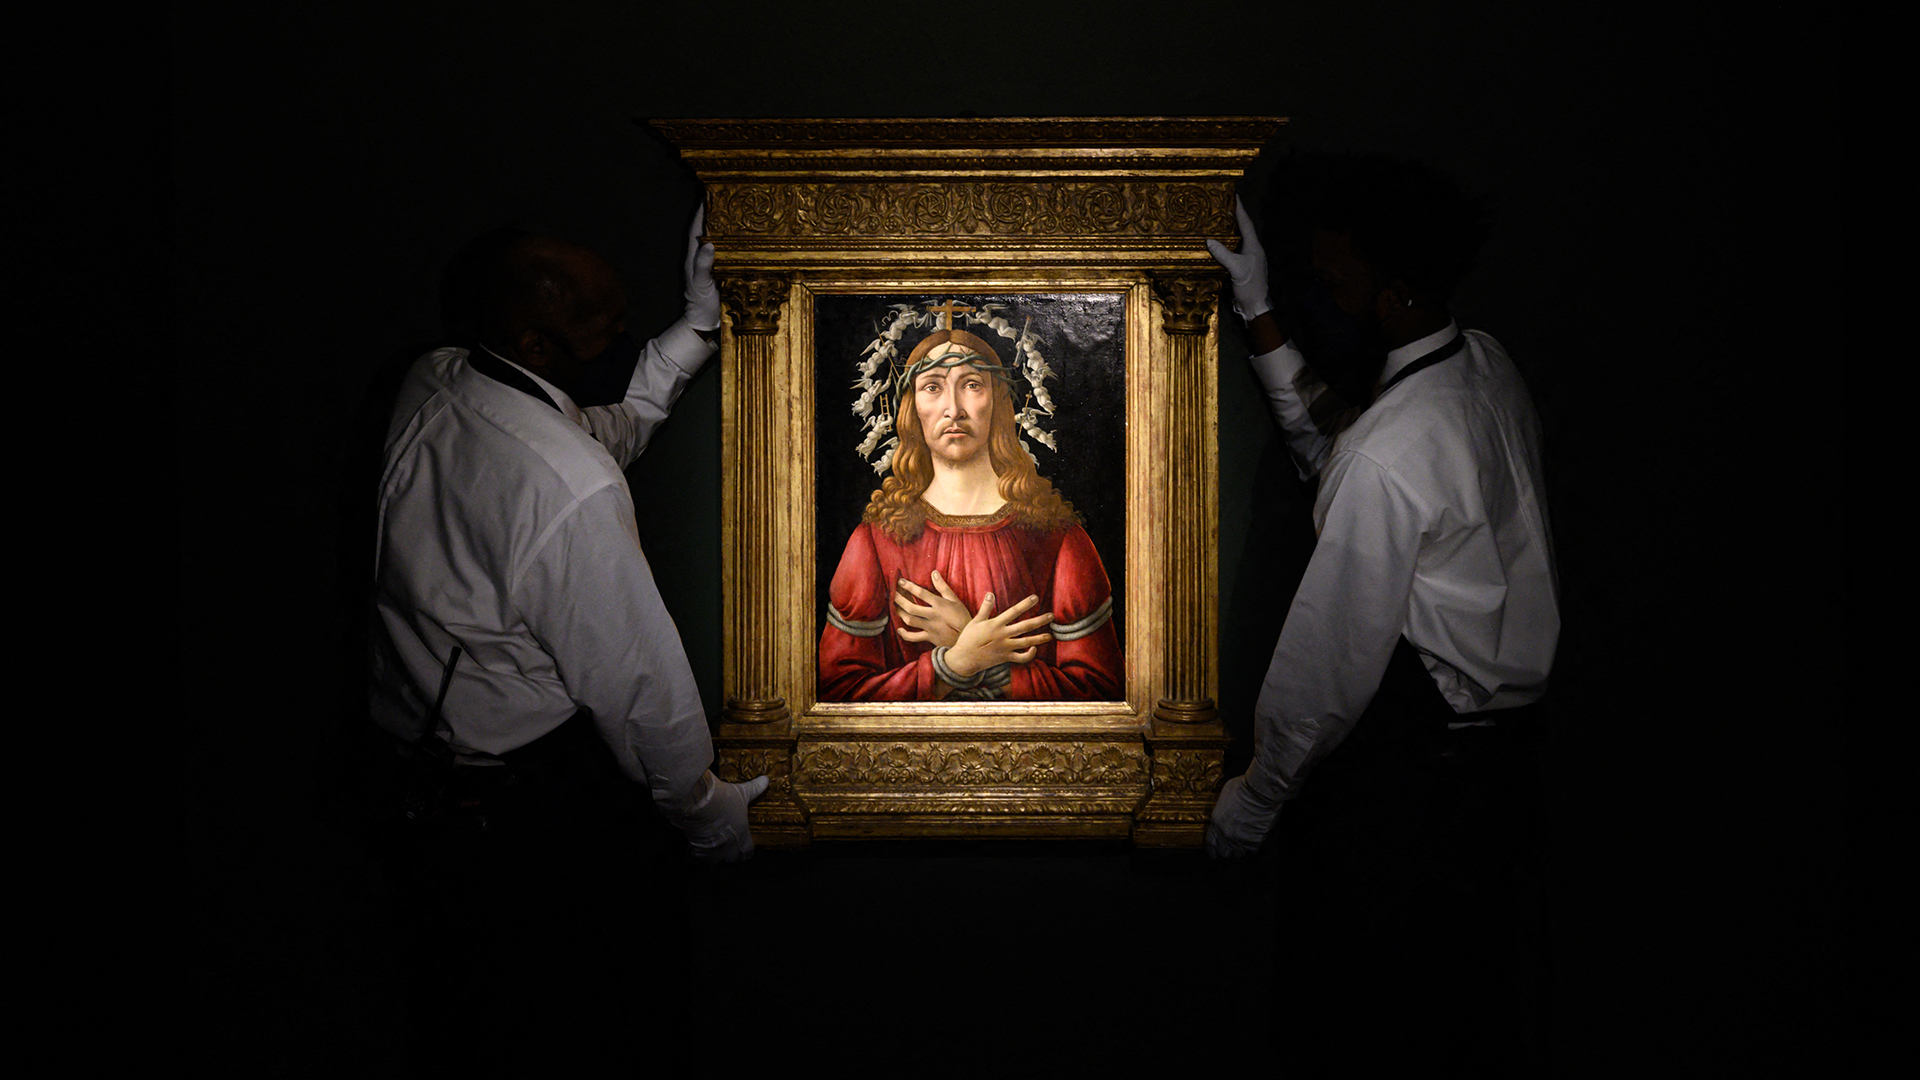 "Cristo varón de dolores", de Botticelli, fue subastada por 45,4 millones de dólares (Ed JONES / AFP)